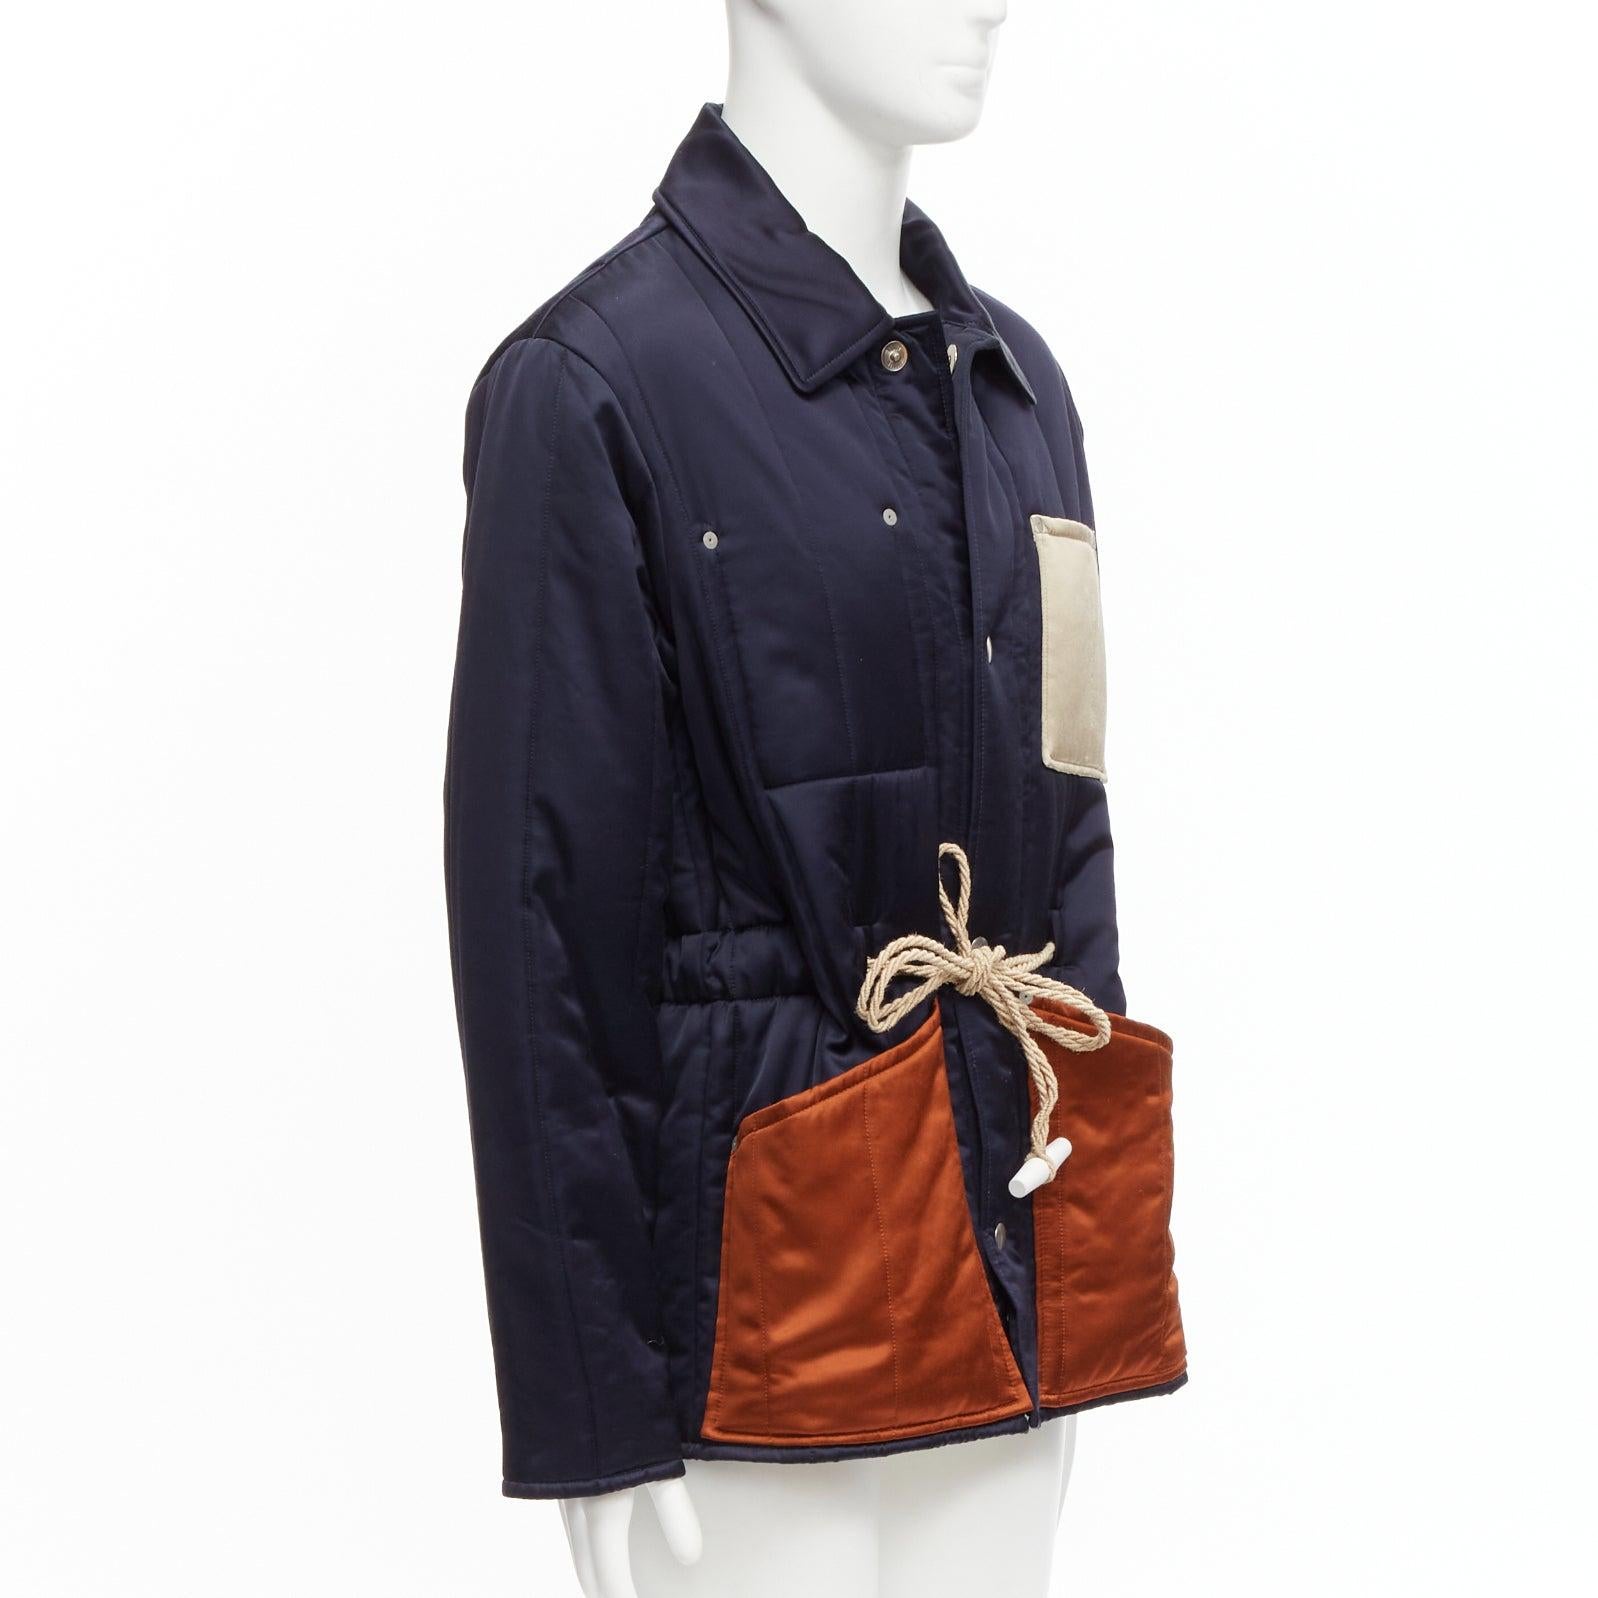 MAISON MARGIELA Manteau matelassé avec poches contrastées en satin bleu marine, taille IT 48 M, 2018 Pour hommes en vente